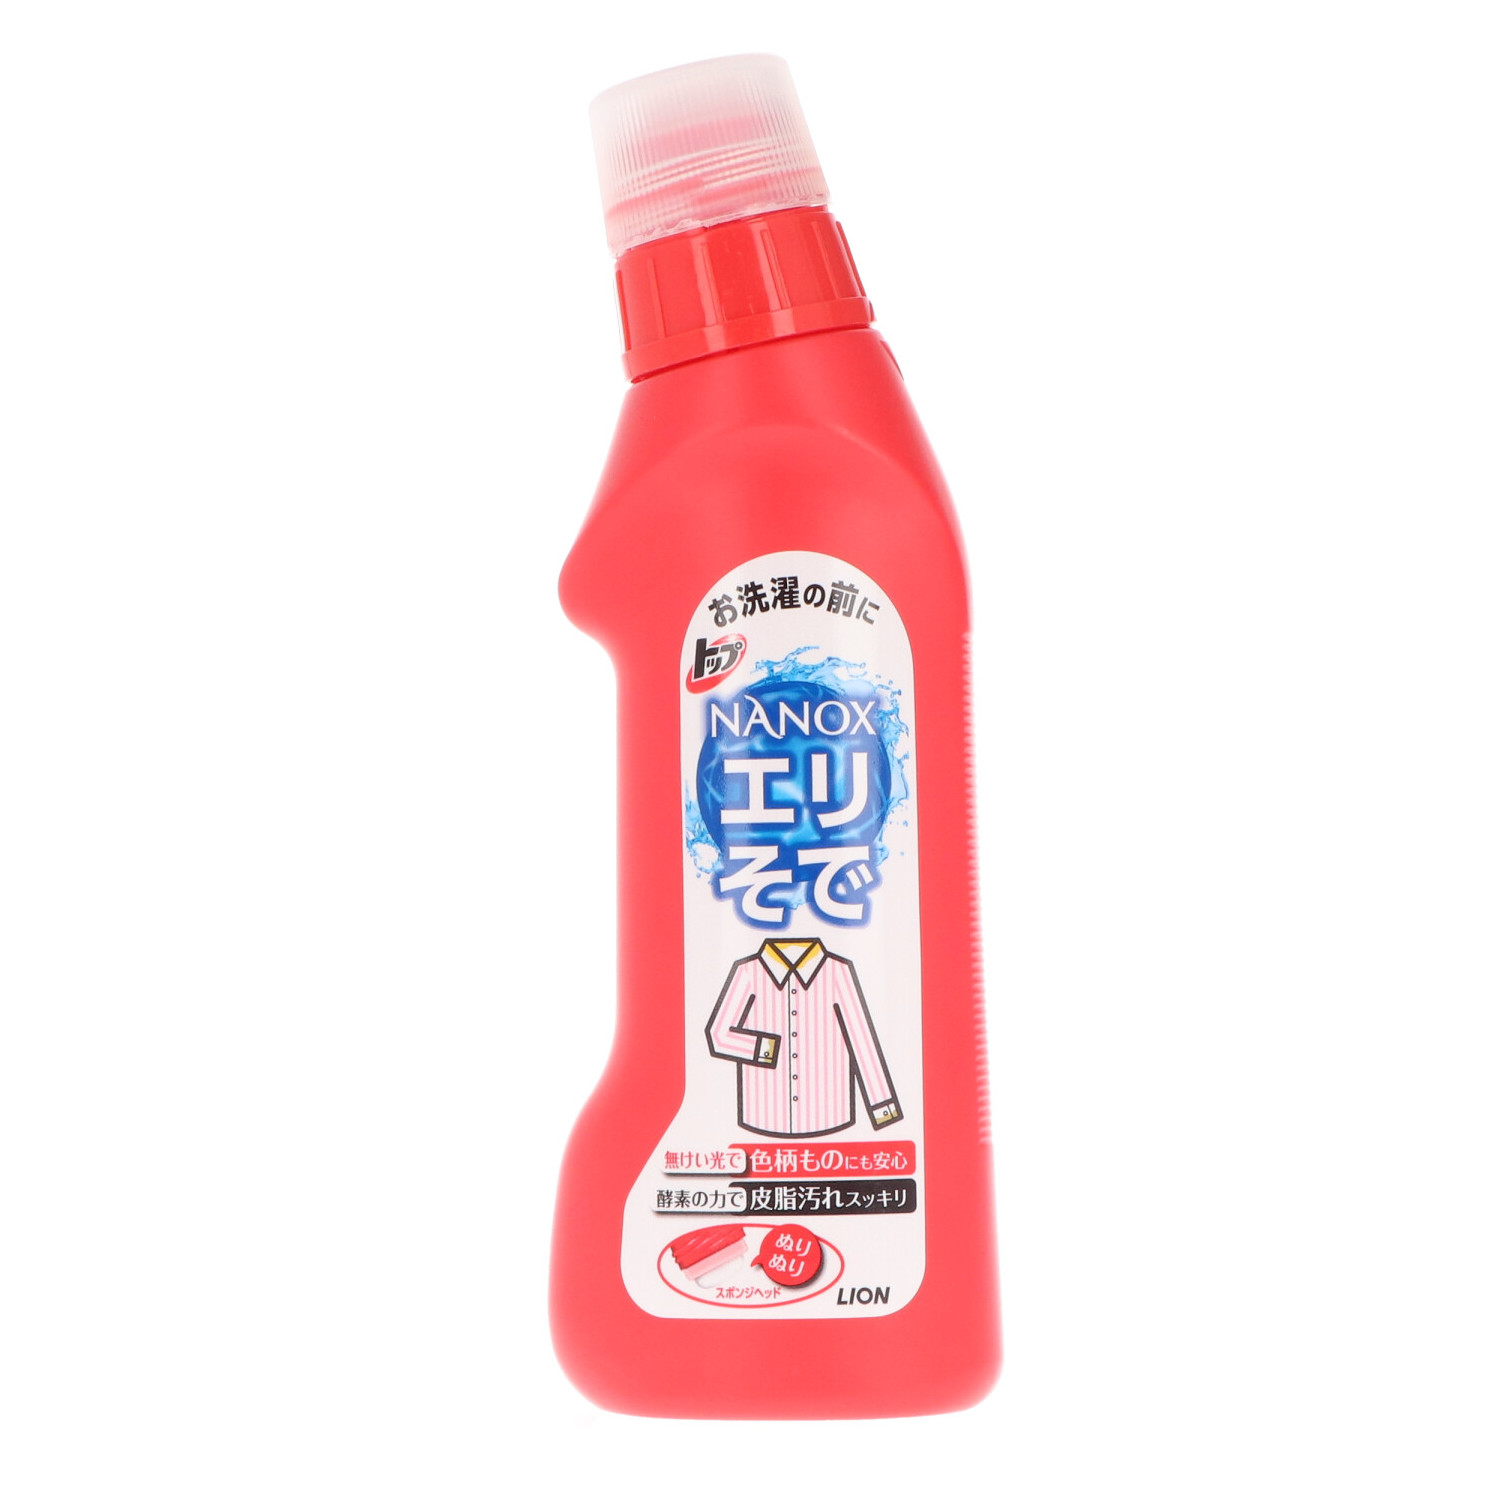 新発売】 ライオン トップ NANOX シミ用 160g 部分洗い用洗剤